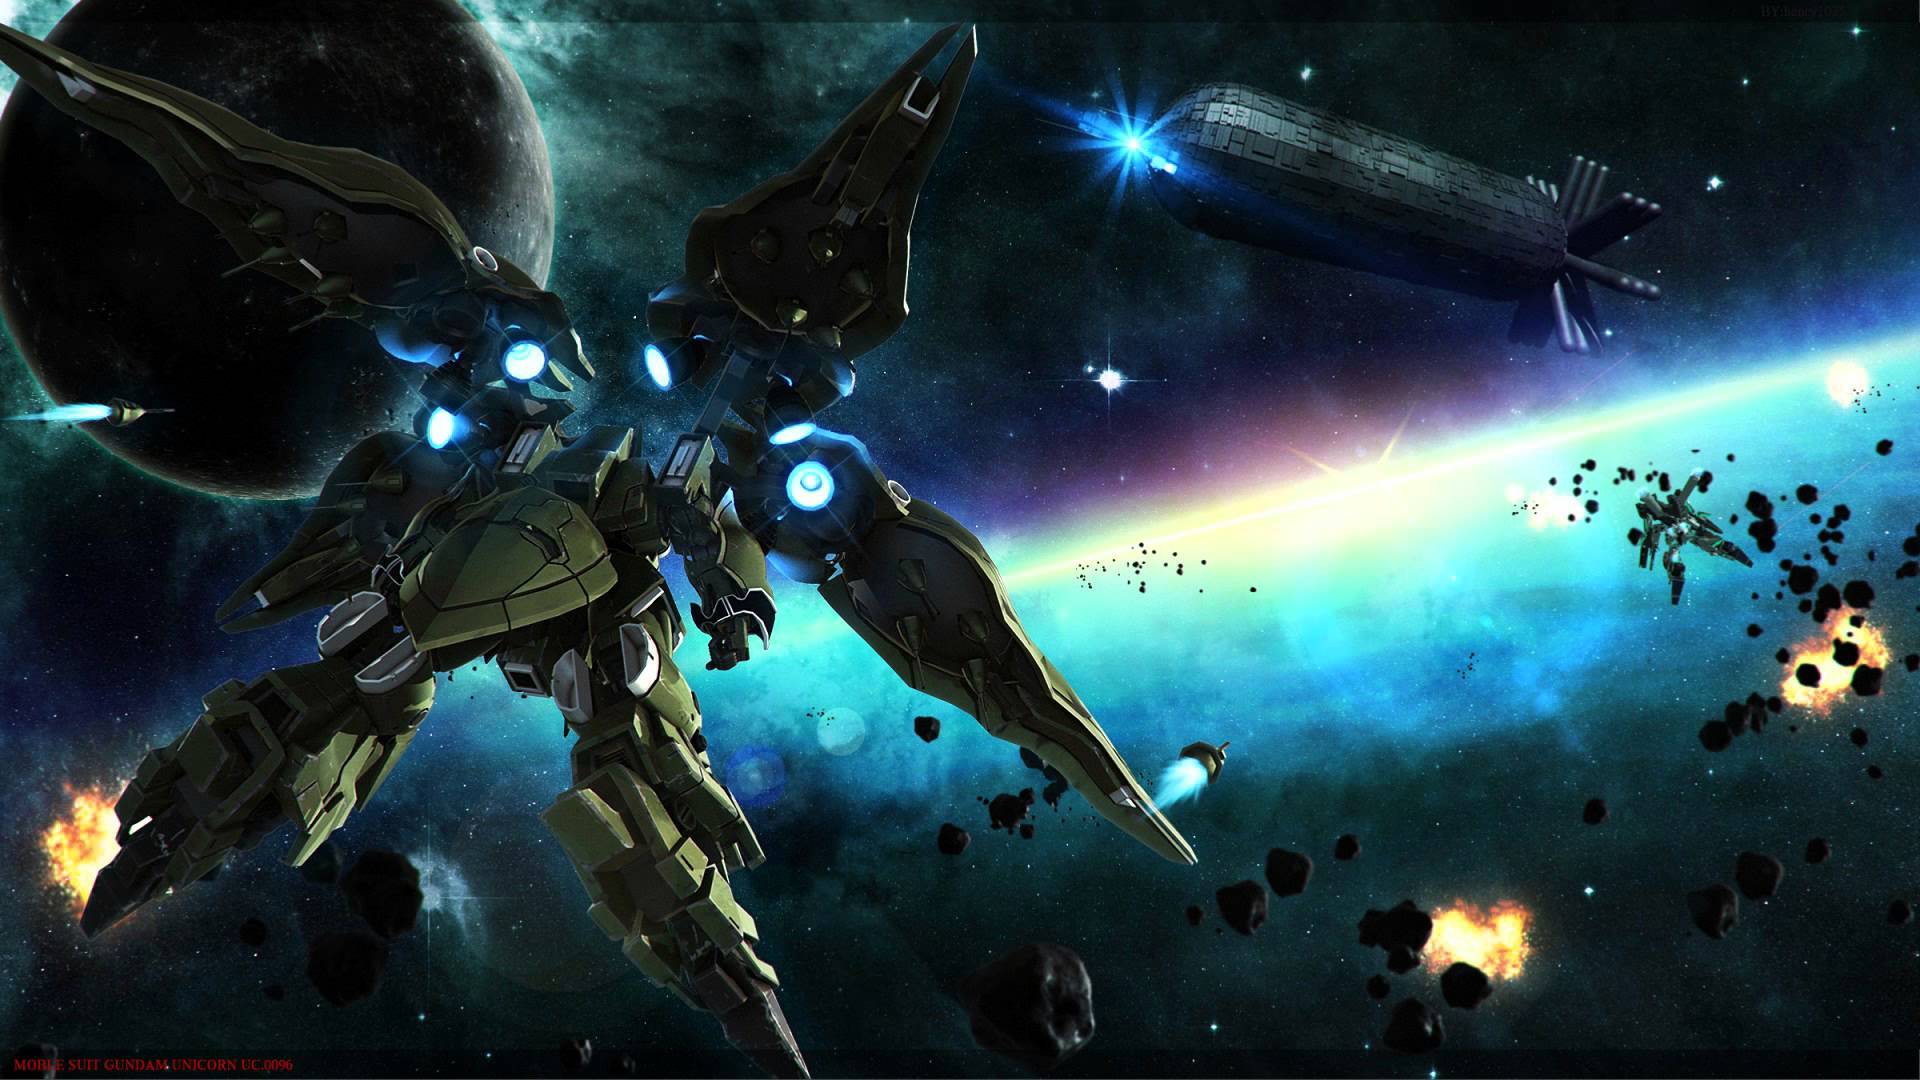 Displaying Image For Gundam Wallpaper 1080p